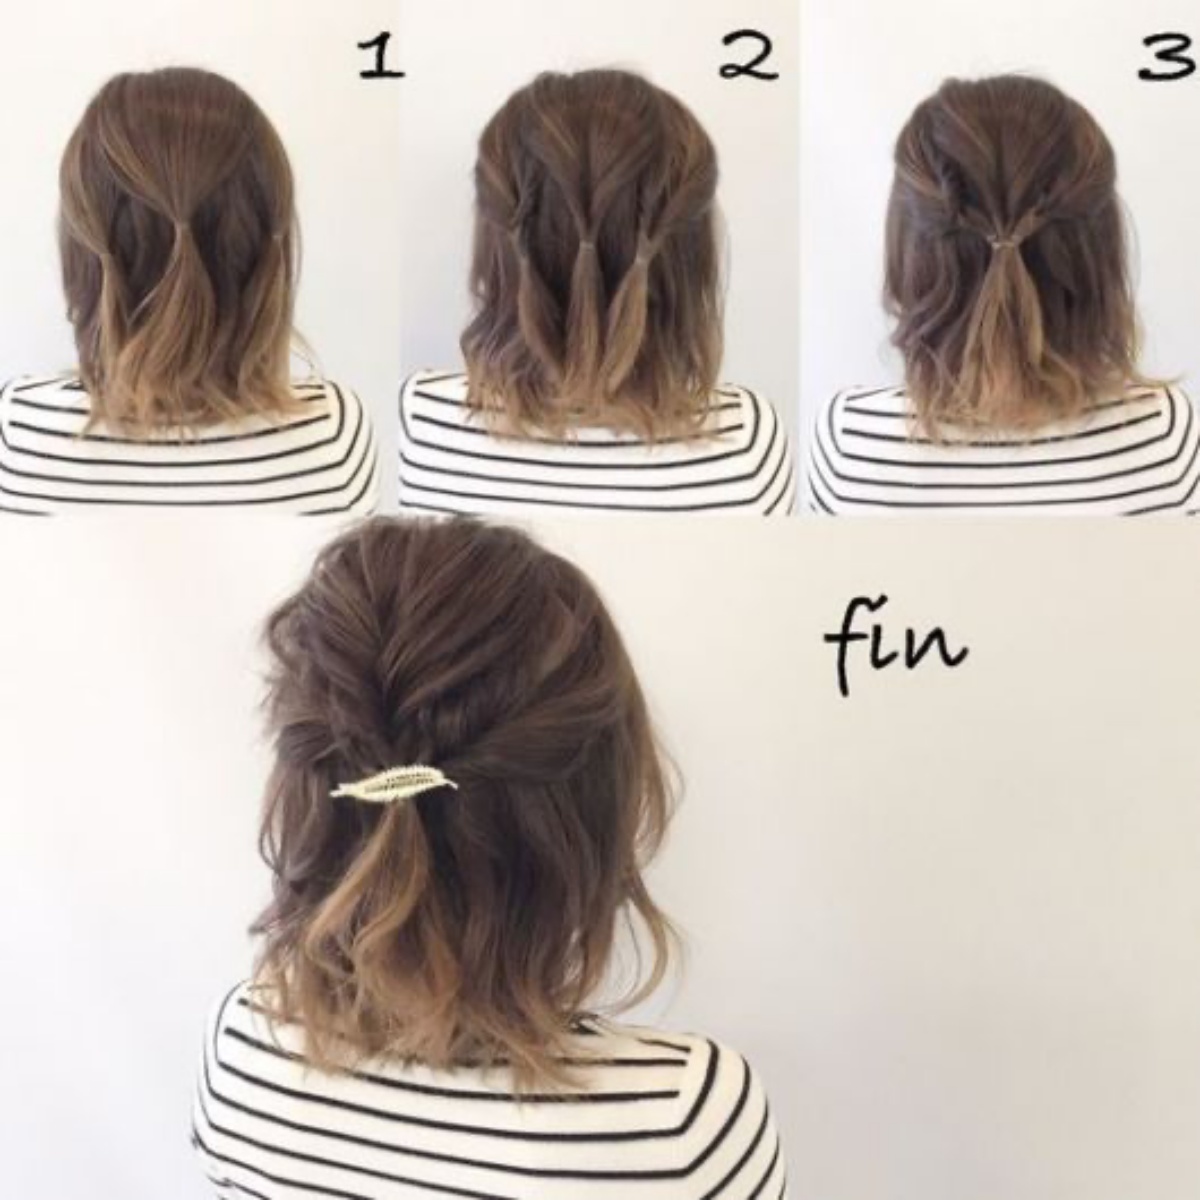 tutorial come fare un semiraccolto su capelli corti